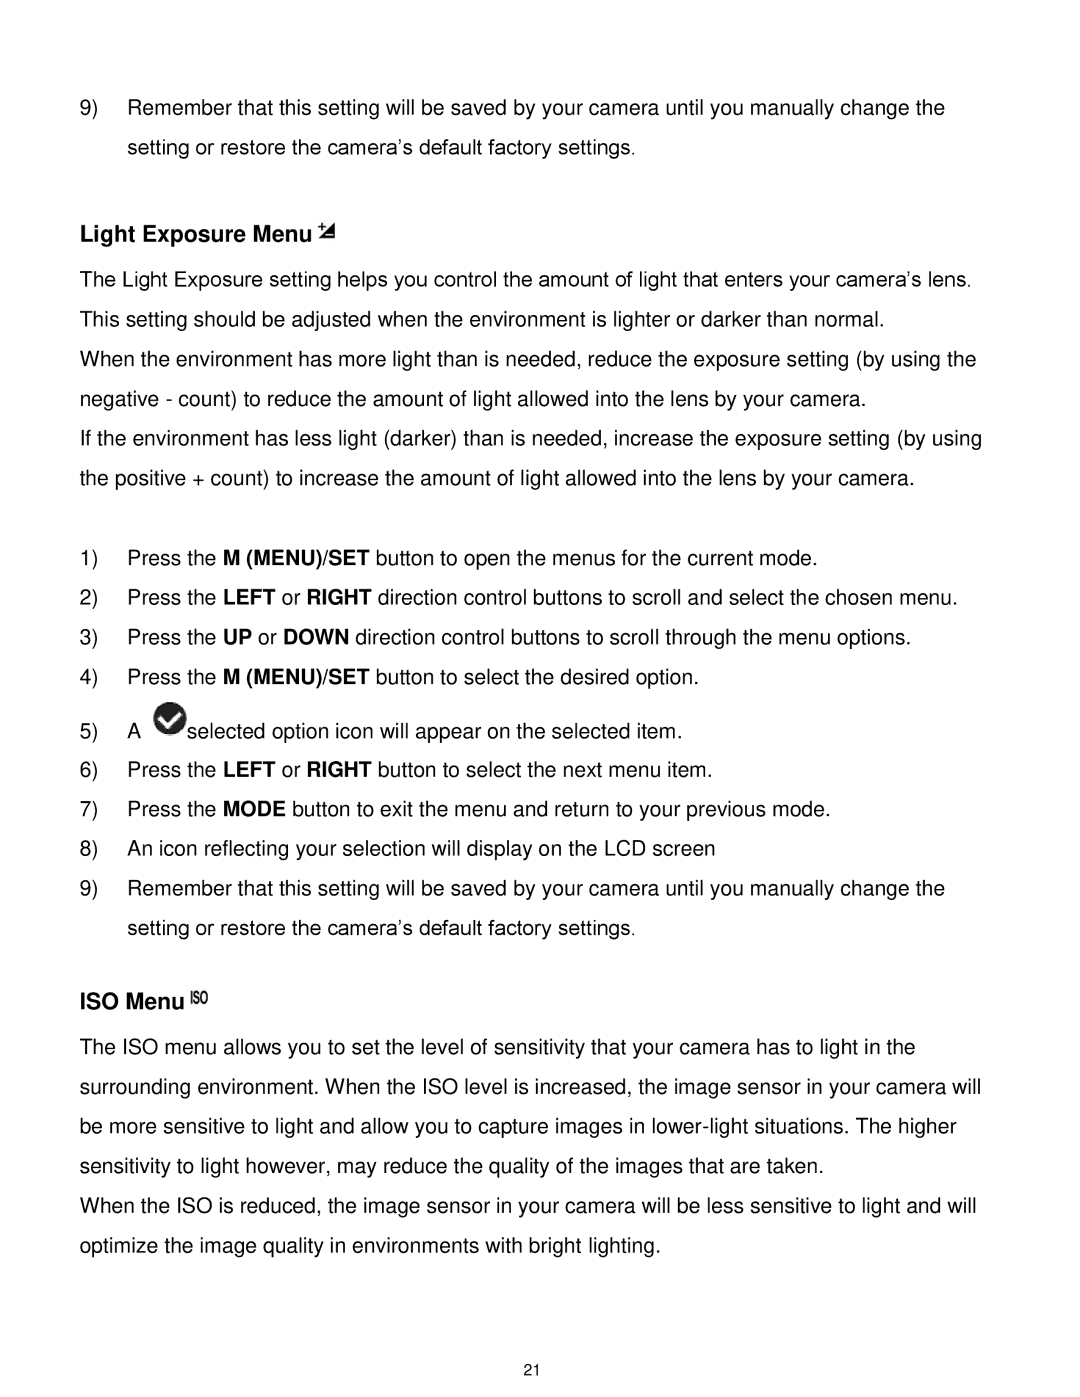 Vivitar S529 user manual Light Exposure Menu, ISO Menu 